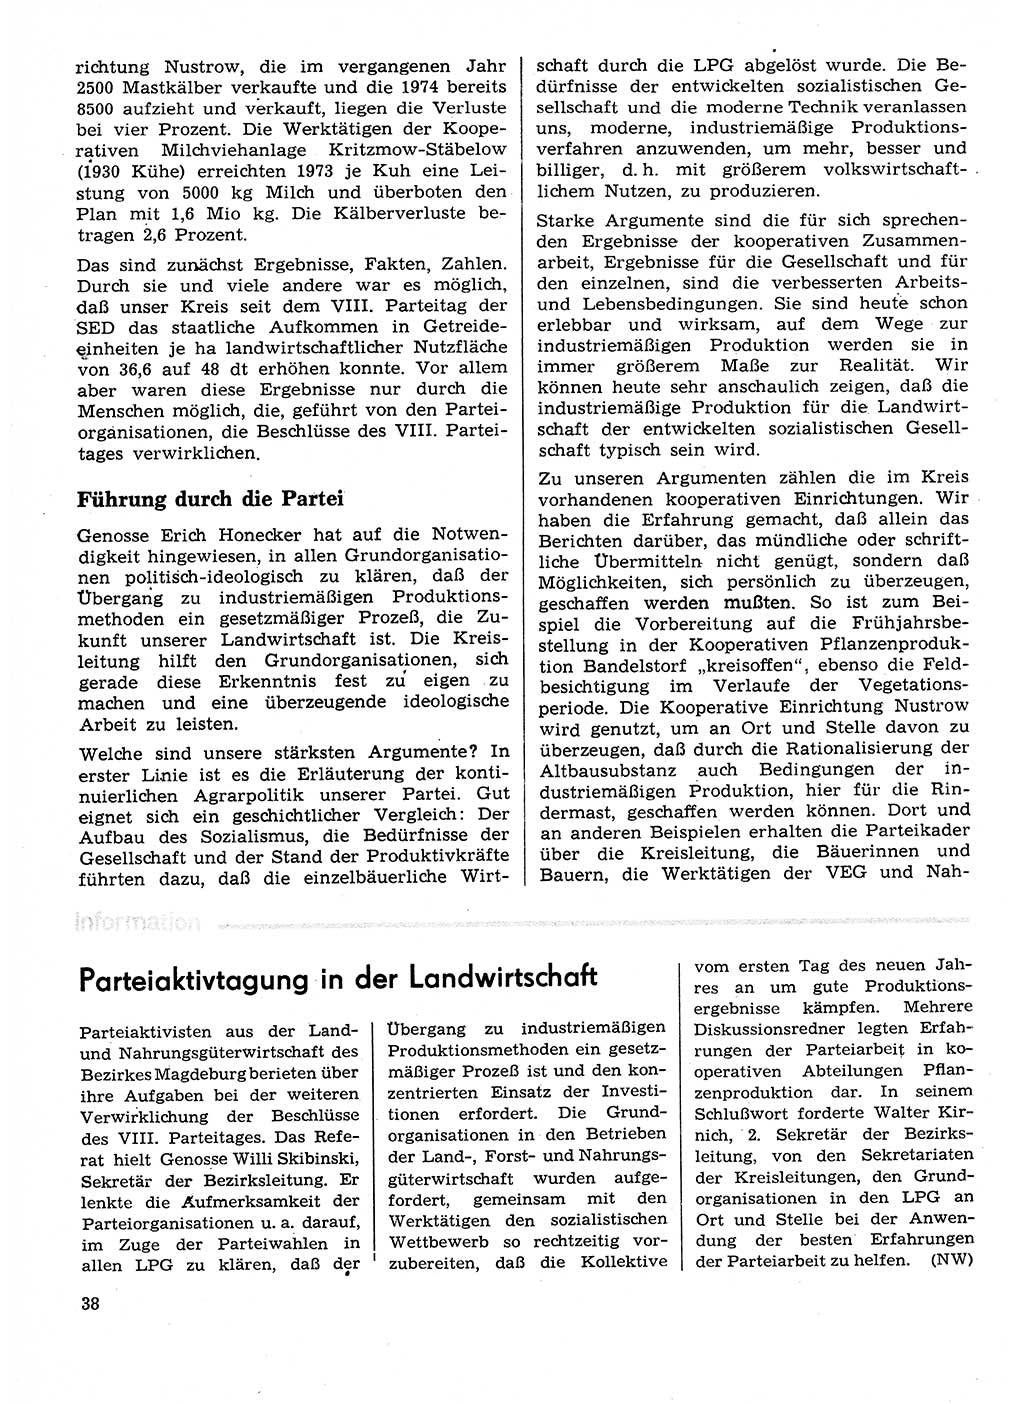 Neuer Weg (NW), Organ des Zentralkomitees (ZK) der SED (Sozialistische Einheitspartei Deutschlands) für Fragen des Parteilebens, 29. Jahrgang [Deutsche Demokratische Republik (DDR)] 1974, Seite 38 (NW ZK SED DDR 1974, S. 38)